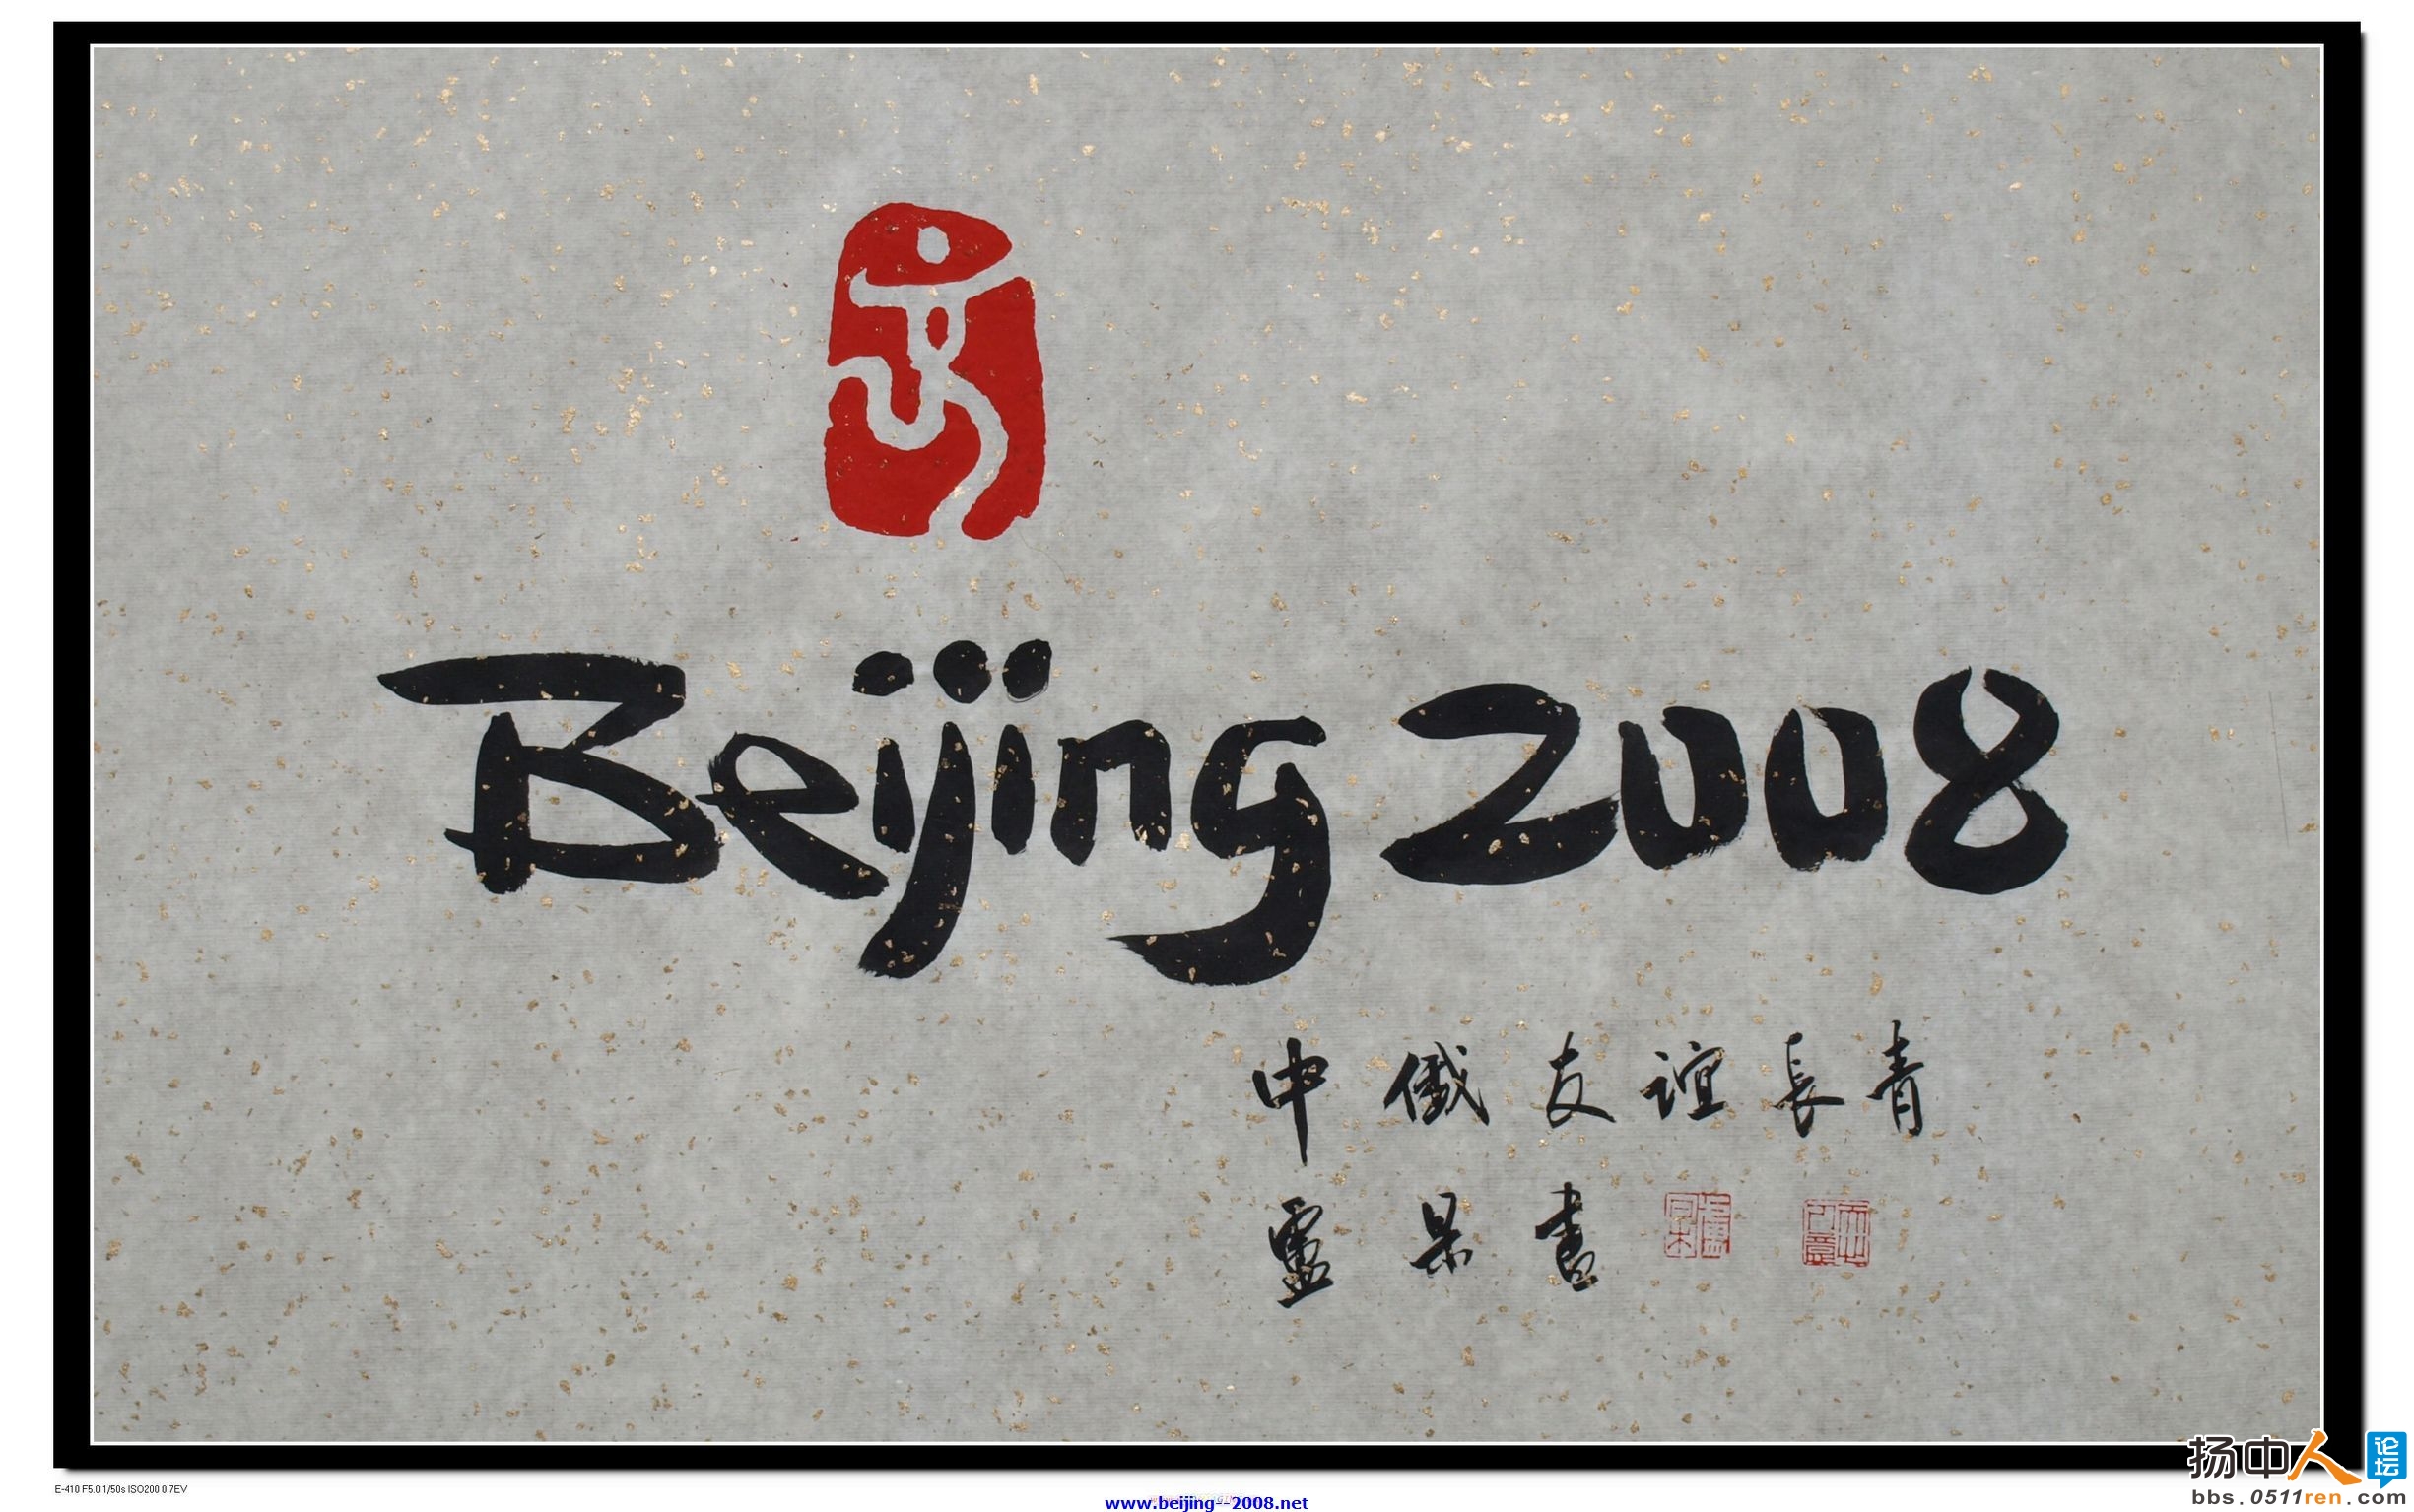 北京2008年夏季奥林匹克运动会卢杲书法文化创意作品 (1).jpg